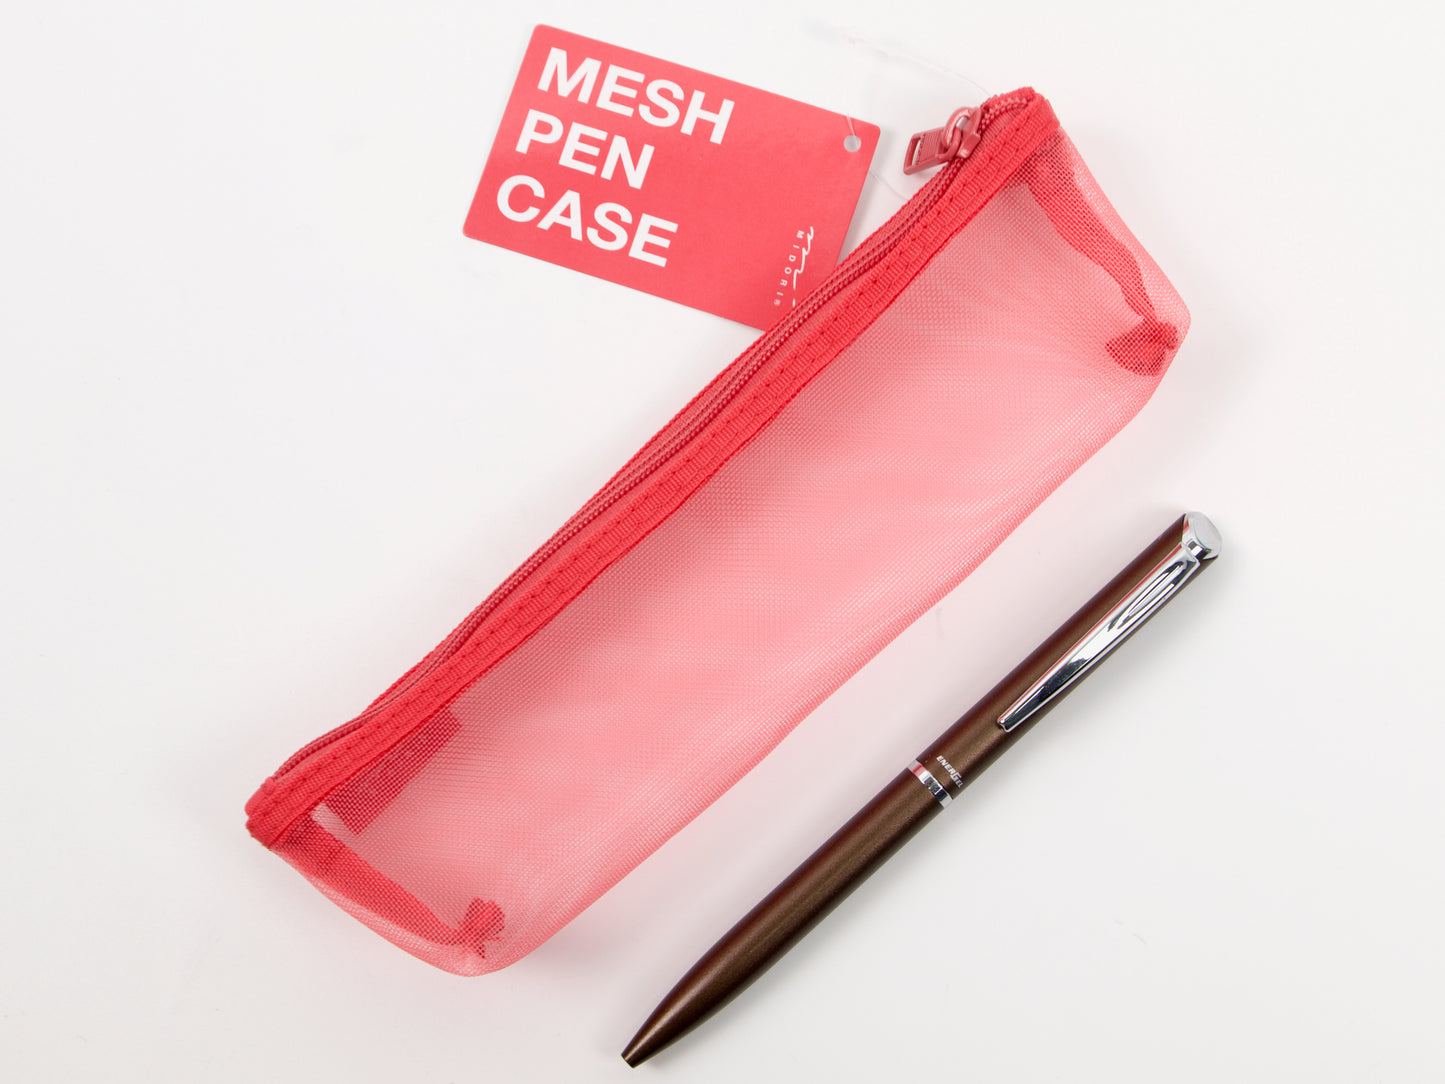 Midori Mesh Pen Case